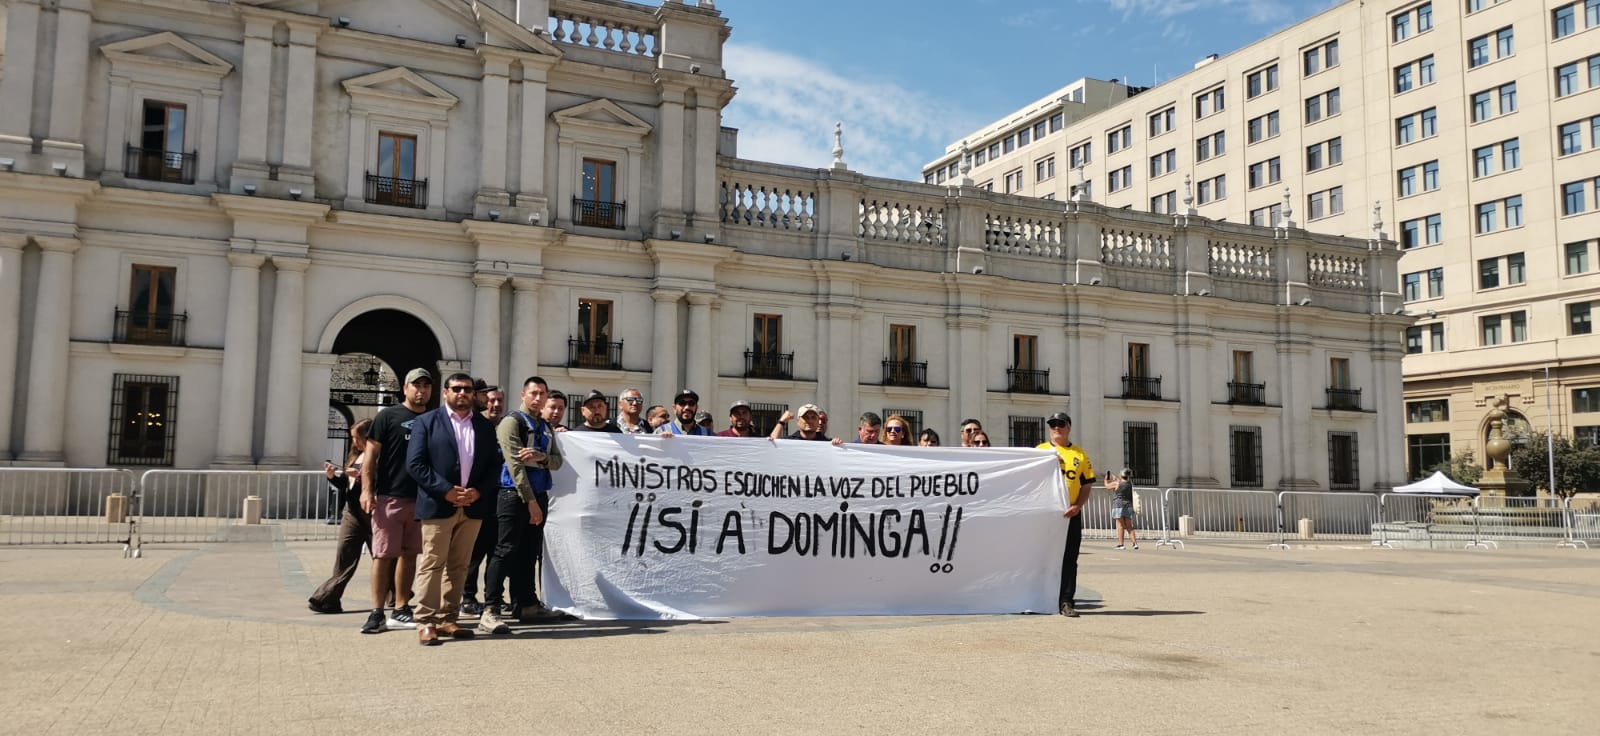 Vecinos y autoridades de La Higuera piden al Gobierno que apruebe el proyecto Dominga